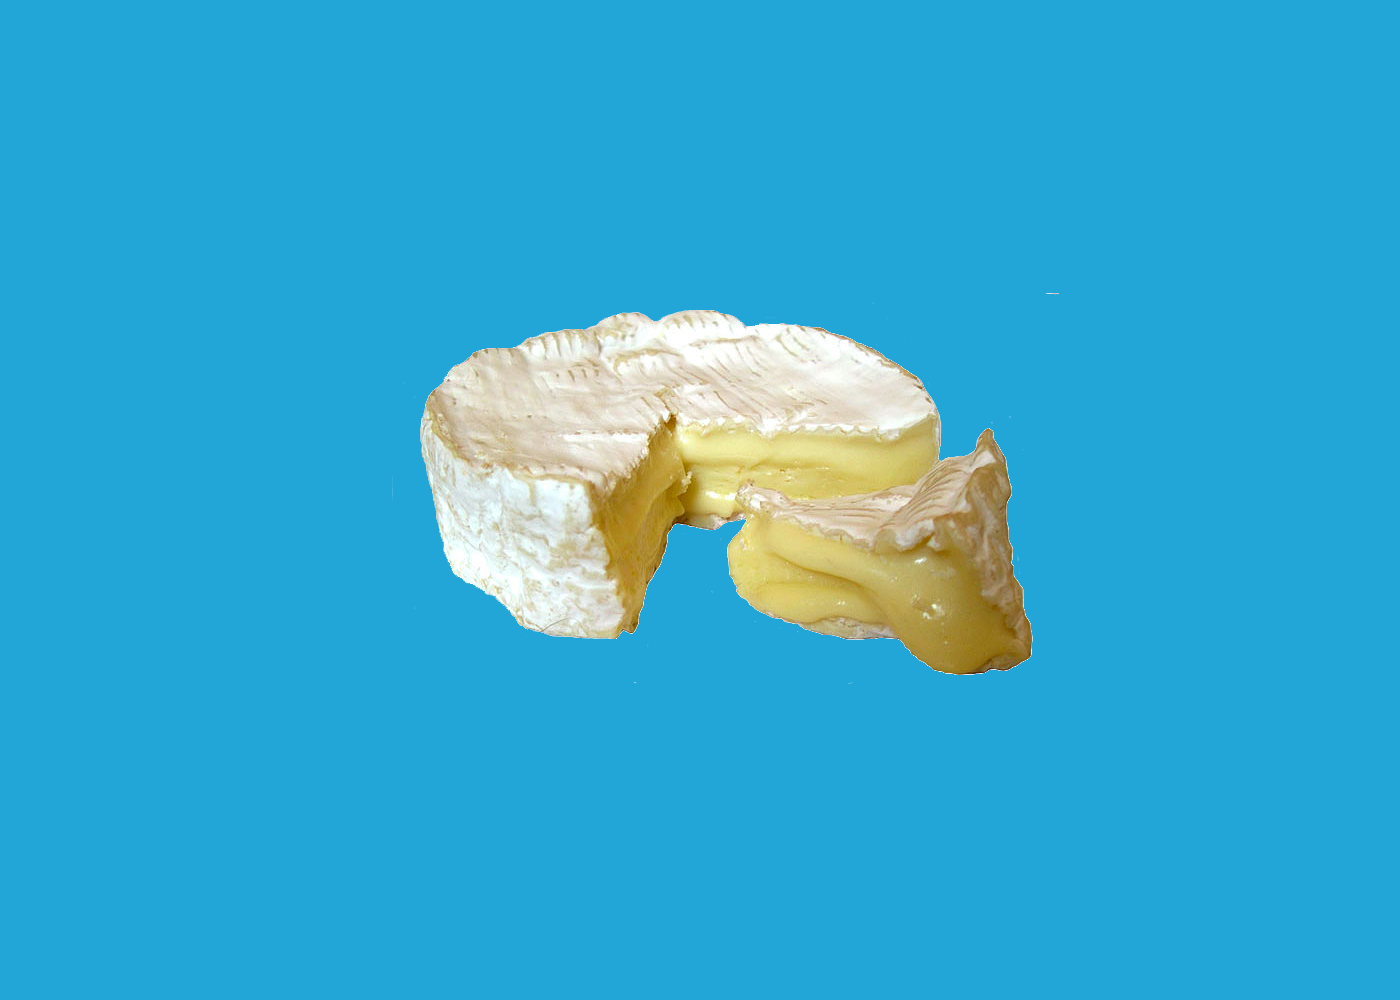 Брі й камамбер: історія прекрасних сирів від Нормана Дейвіса